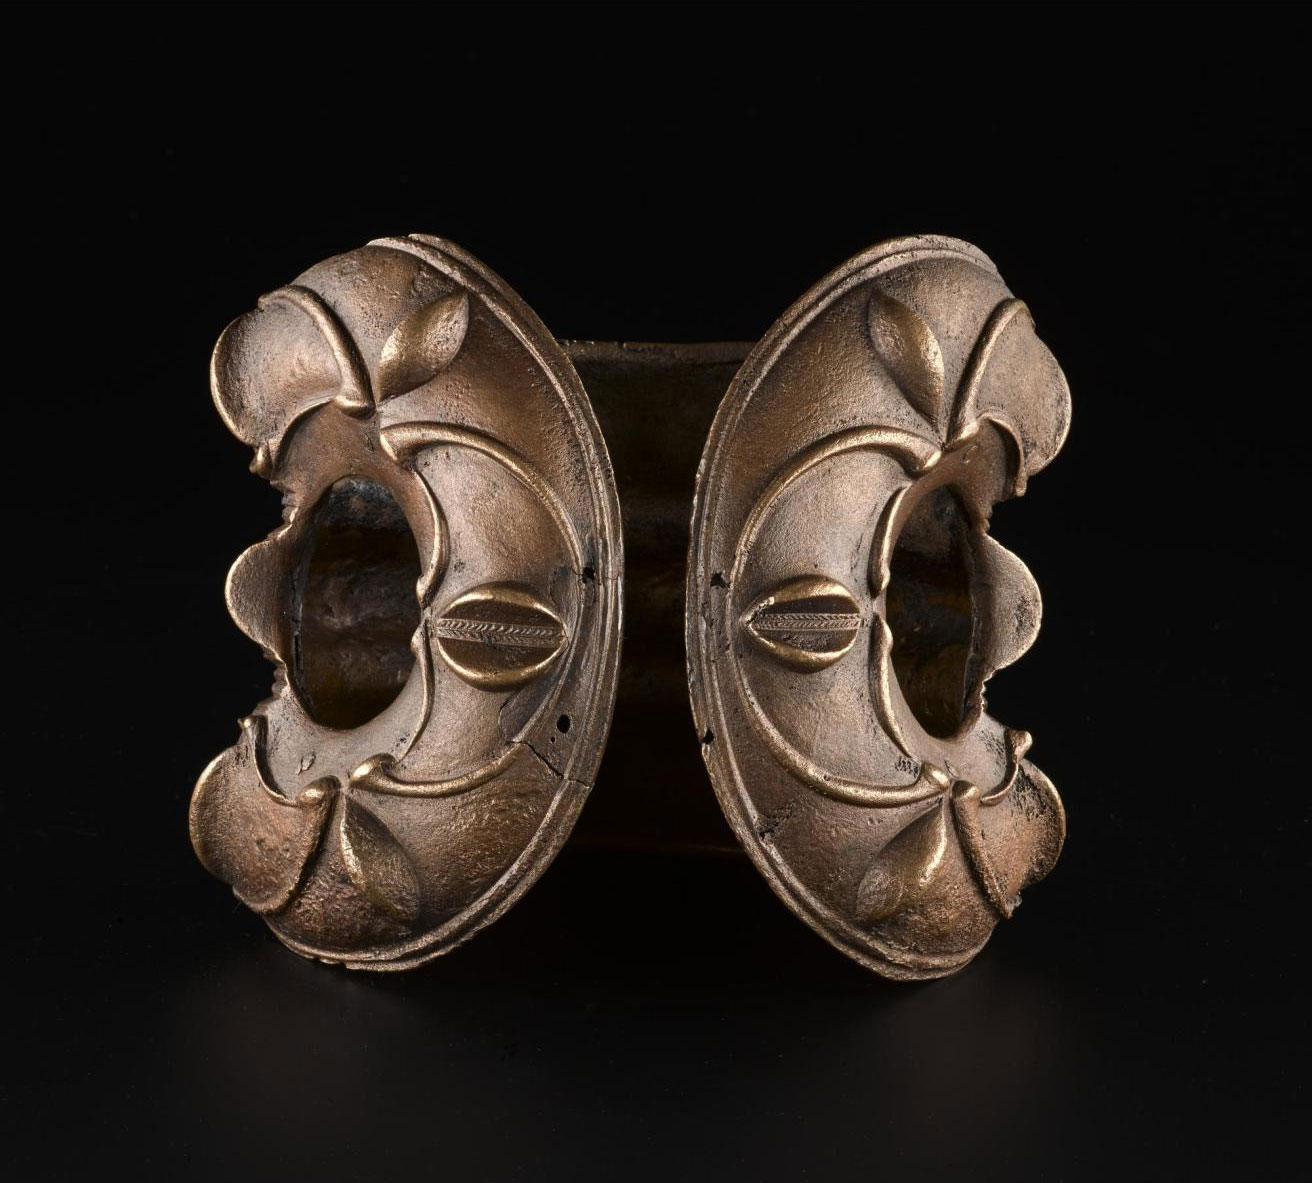 Bronze armlet